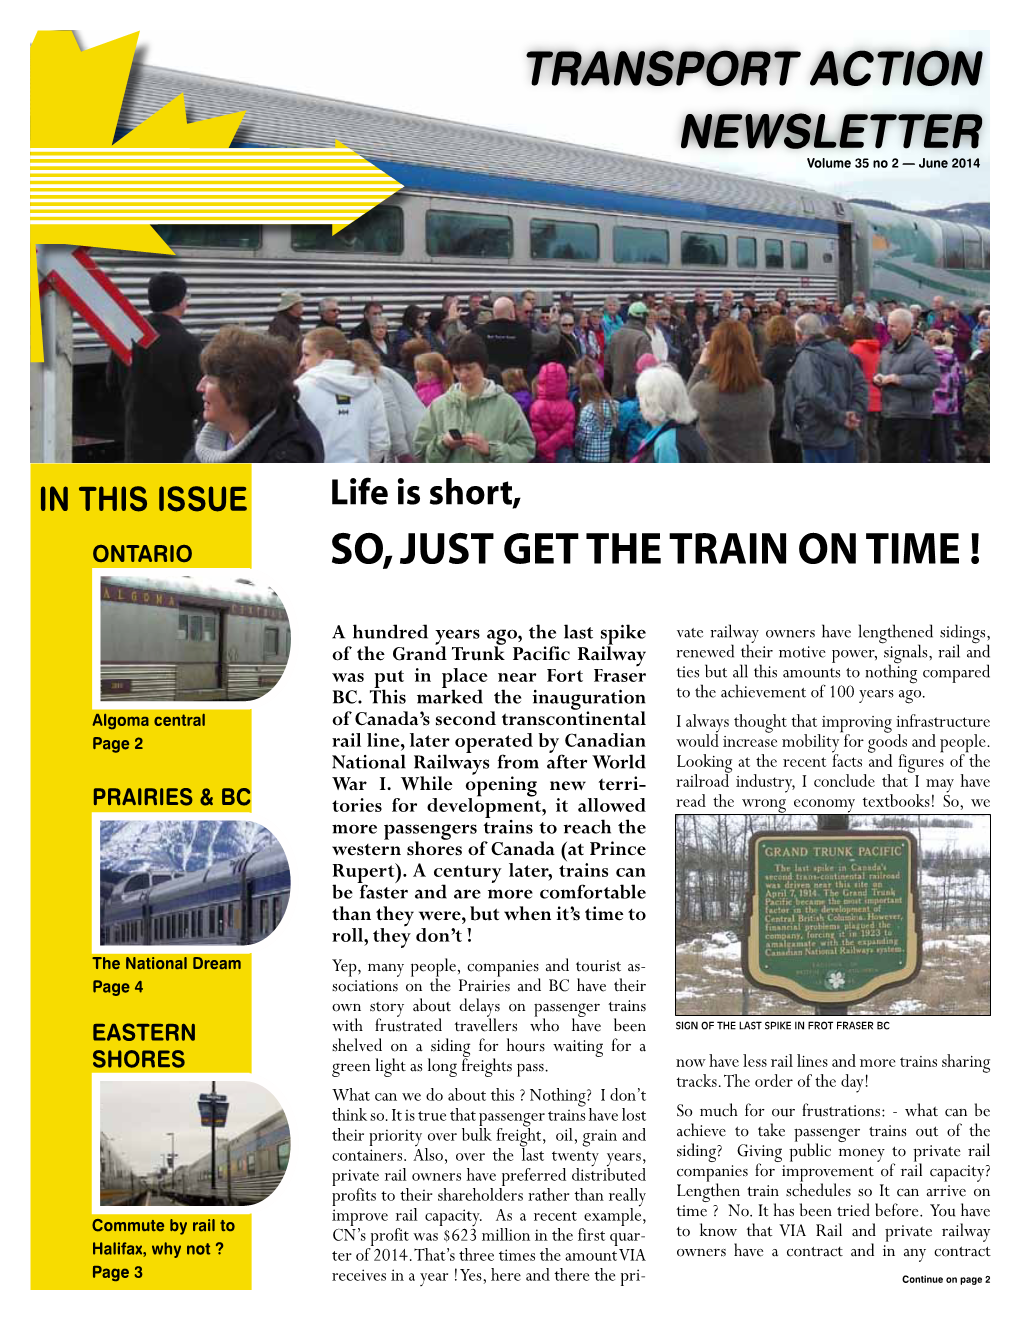 Transport Action Newsletter – Vol. 35, No. 2 (June 2014)